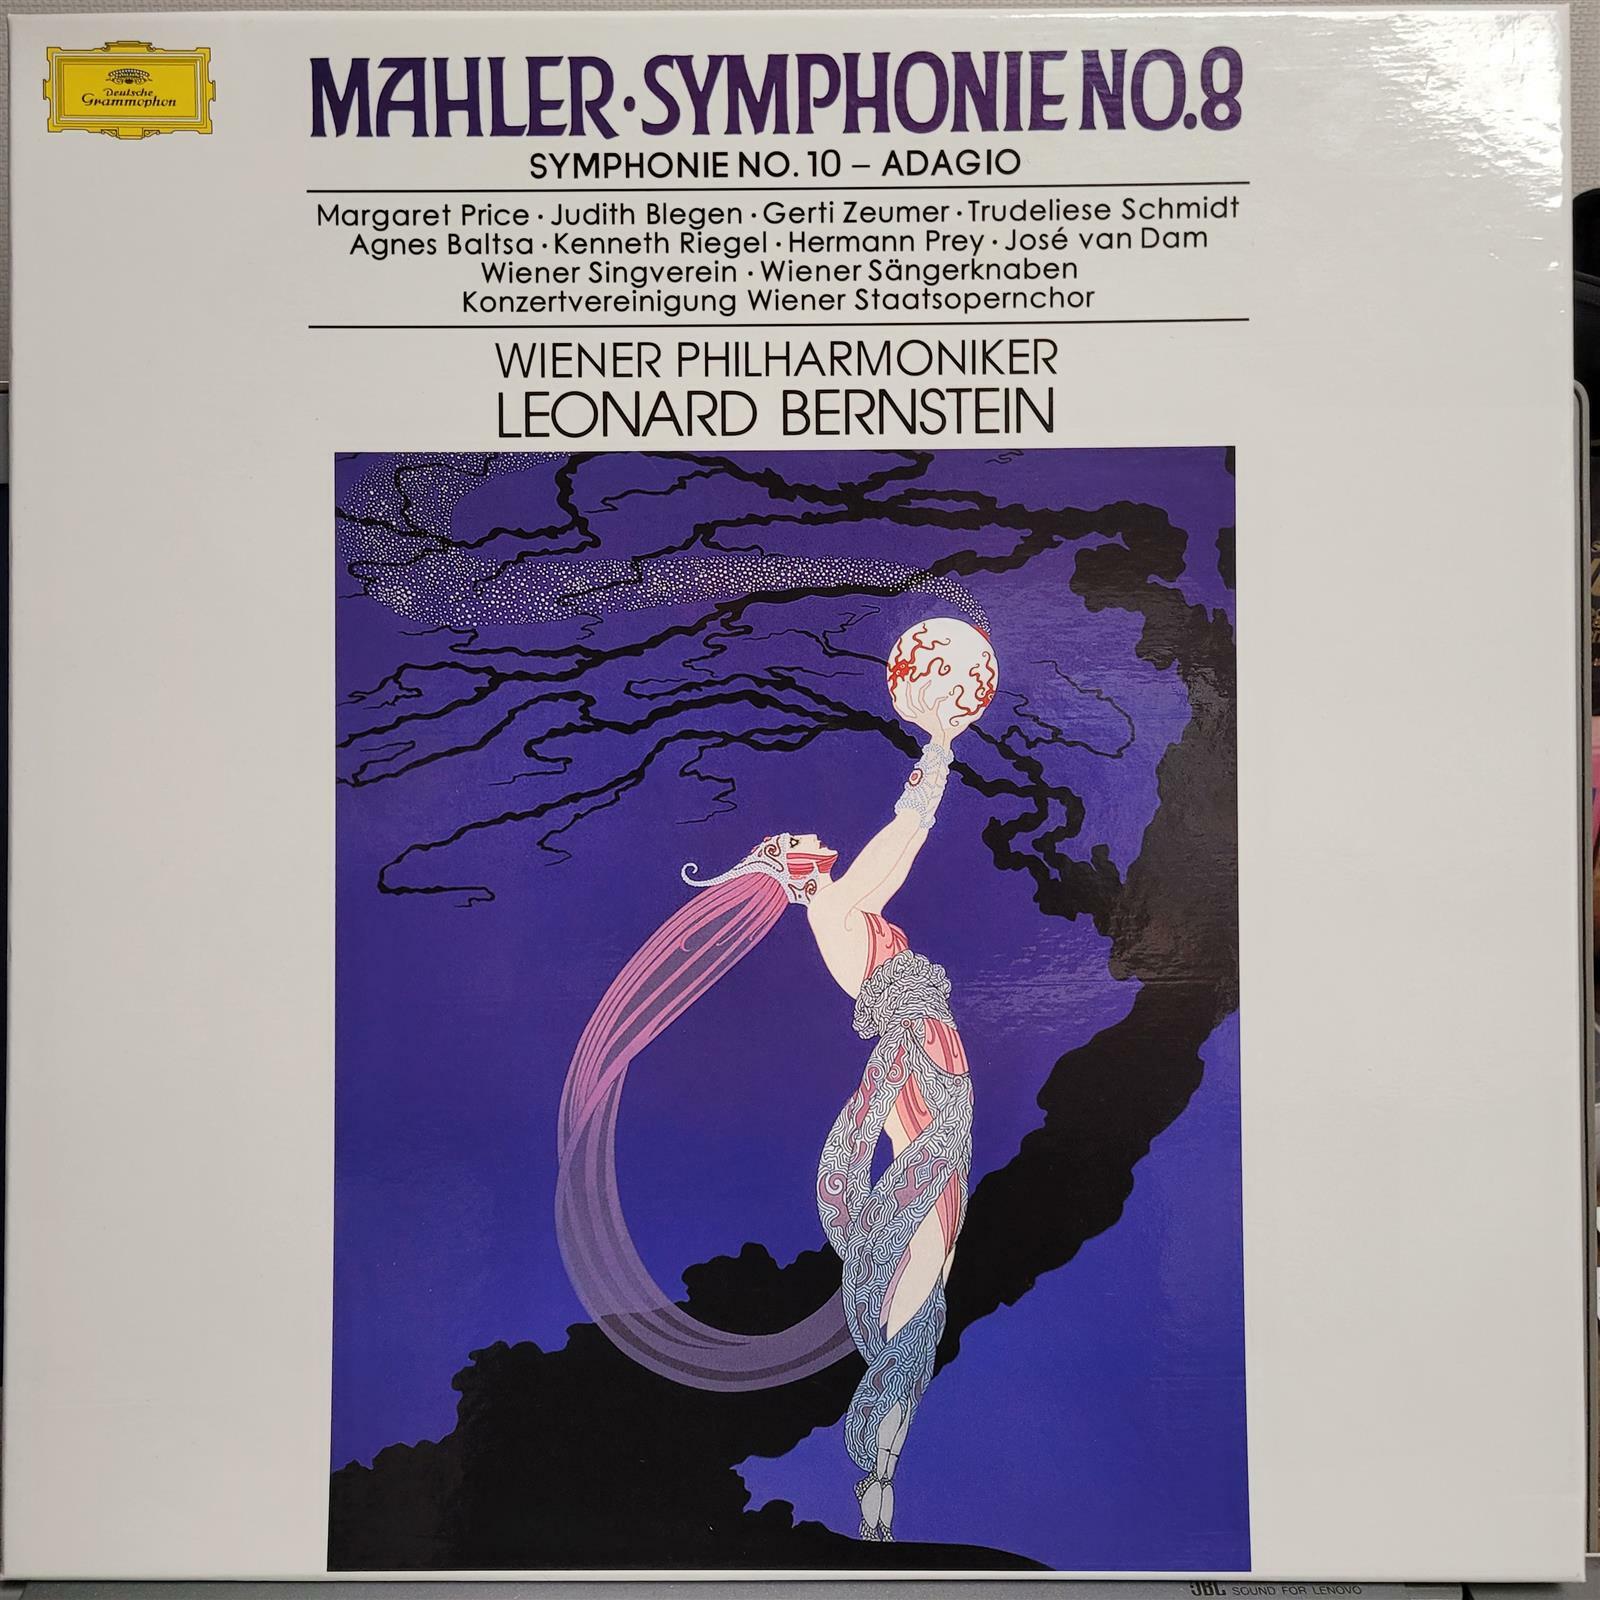 [중고] Mahler Symphony No.8 / No.10 Adagio - Wiener Philharmoniker, Leonard Bernstein